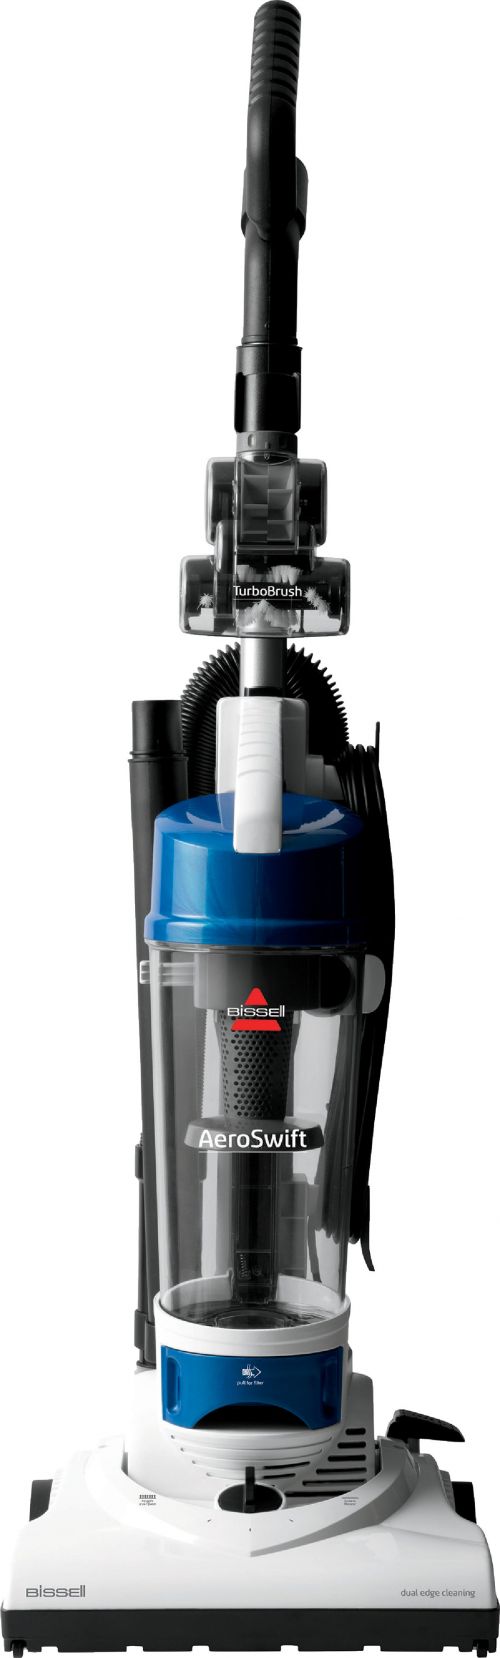 Пылесос Биссел. Пылесос Daewoo Vacuum Compact. Bissell мешковой пылесос. Пылесос к 7. Компакт вертикальный